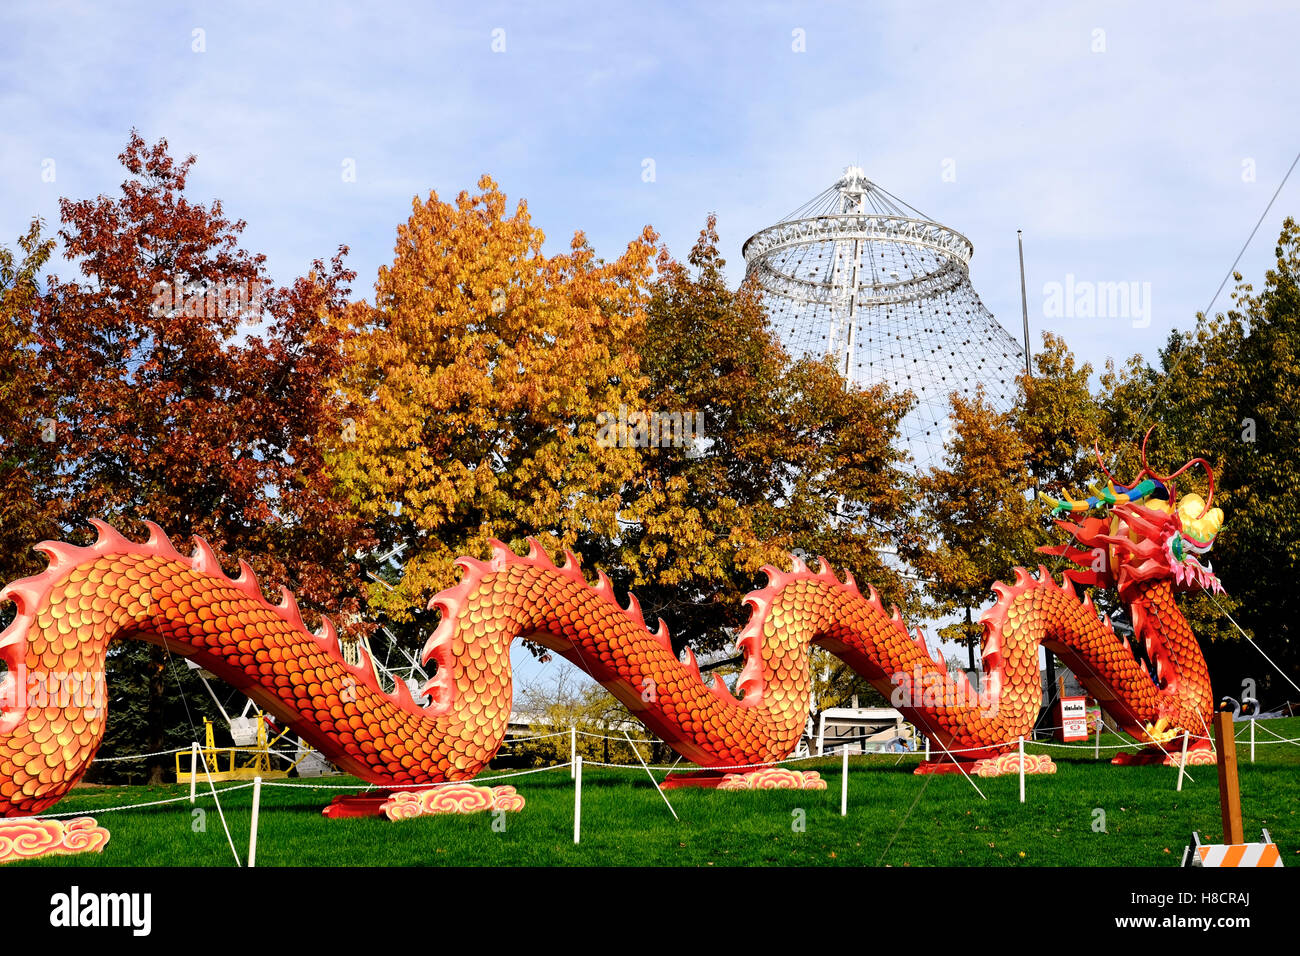 L'Amérique latine au festival chinois du Parc Riverside de Spokane, Washington, USA Banque D'Images